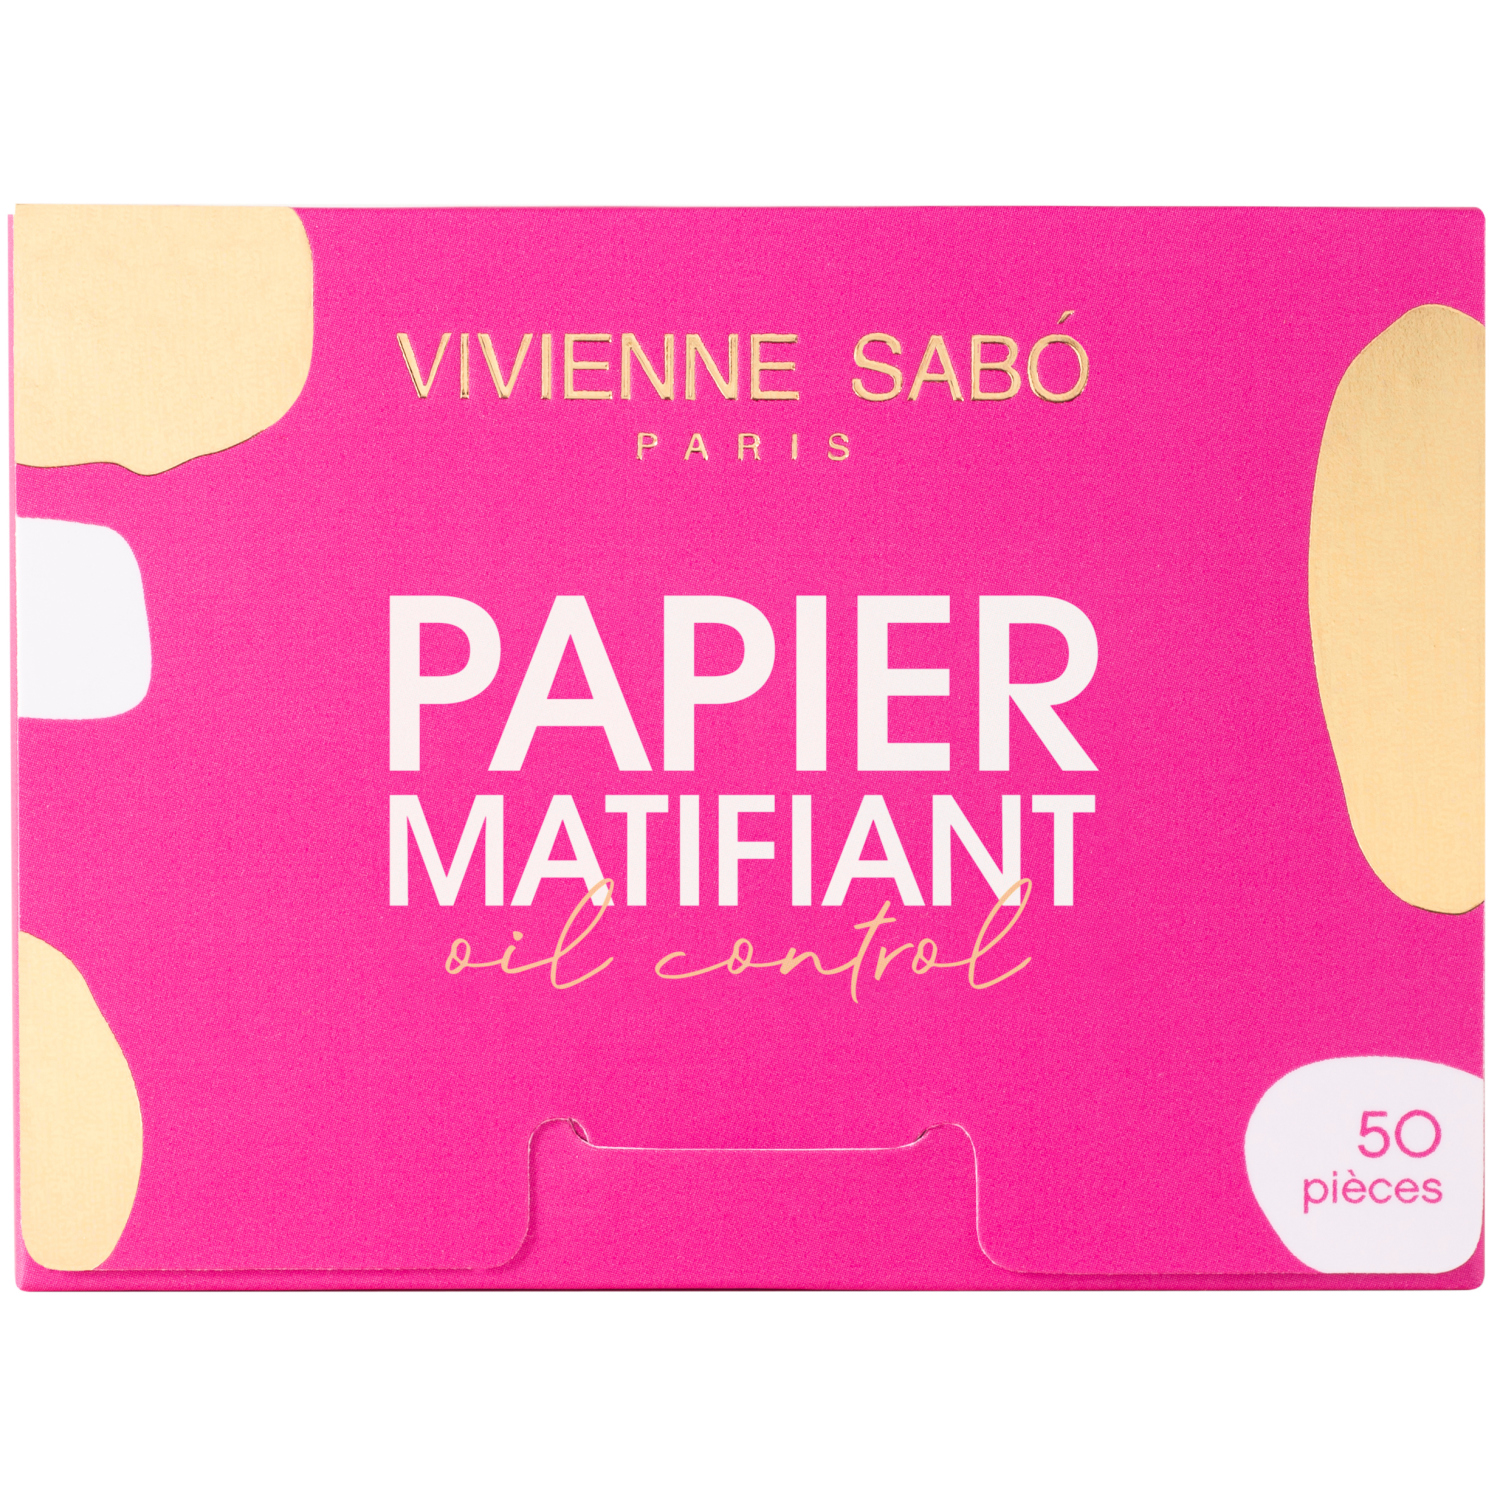 Матирующие салфетки Vivienne Sabo Papier Matifiant, моментальное удаление жирного блеска, прозрачно-розоватые, 50шт. матирующие салфетки для лица yes girl yes 50 шт